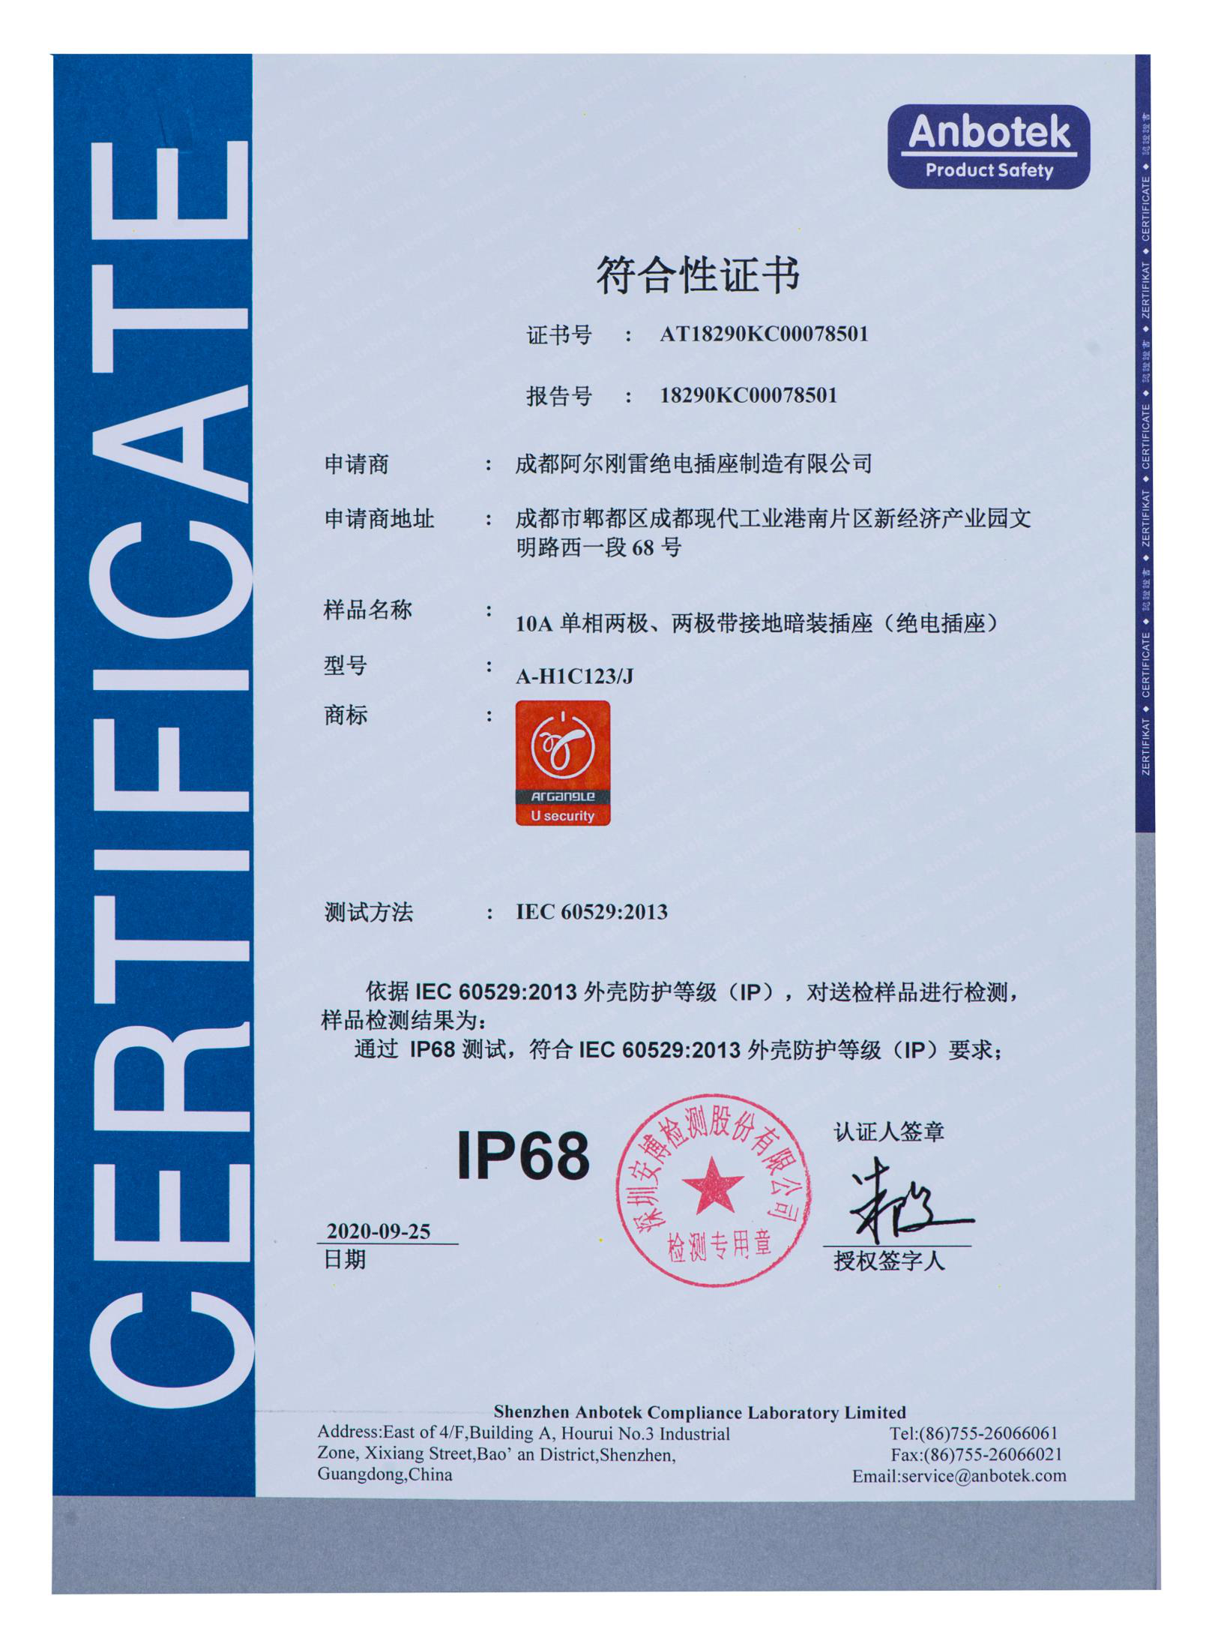 IP68 waterproof and dustproof certificate